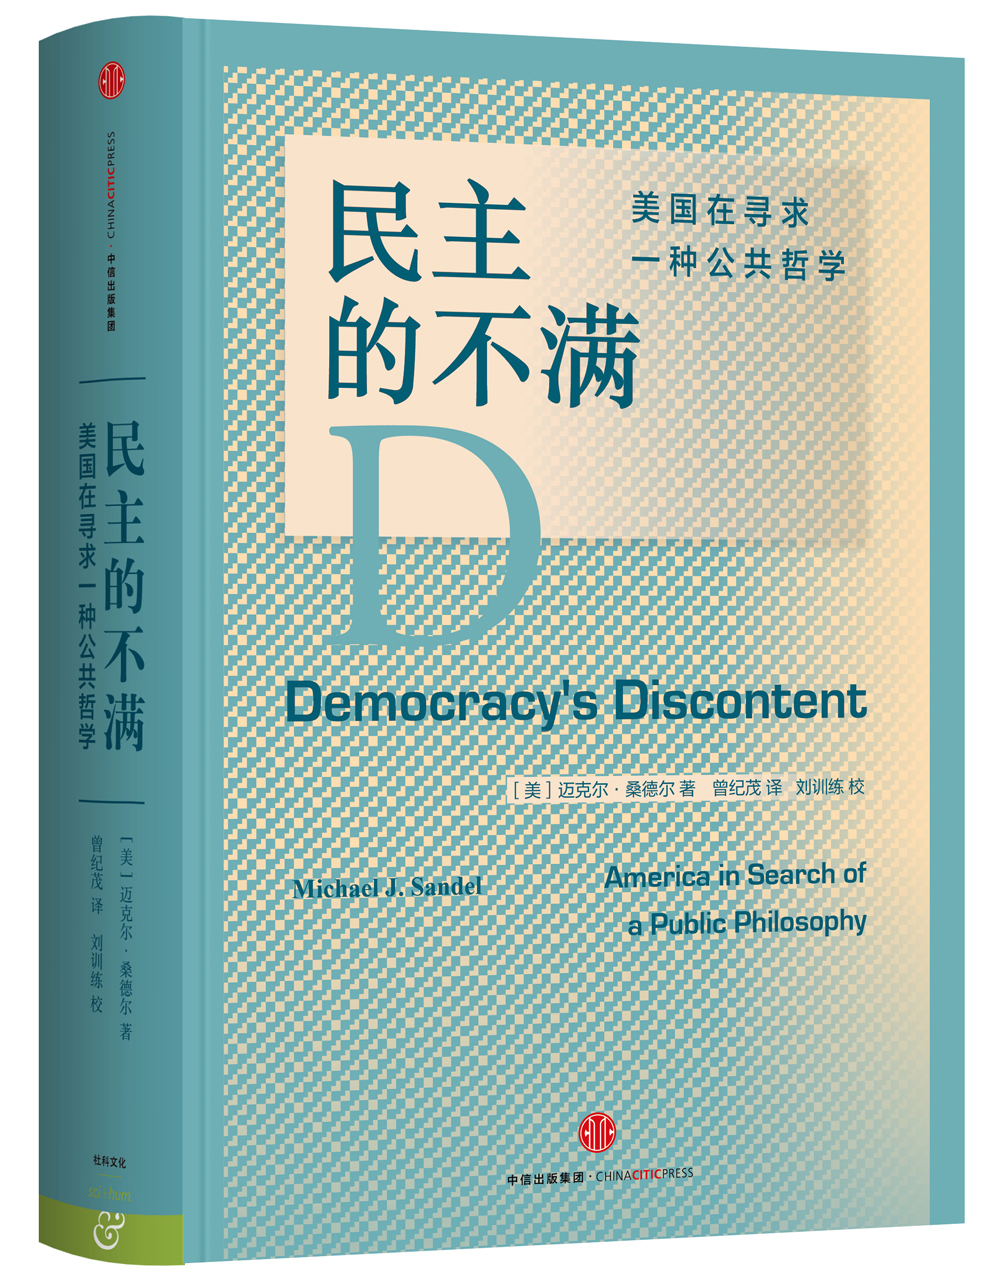 民主的不满：美国在寻求一种公共哲学 epub格式下载